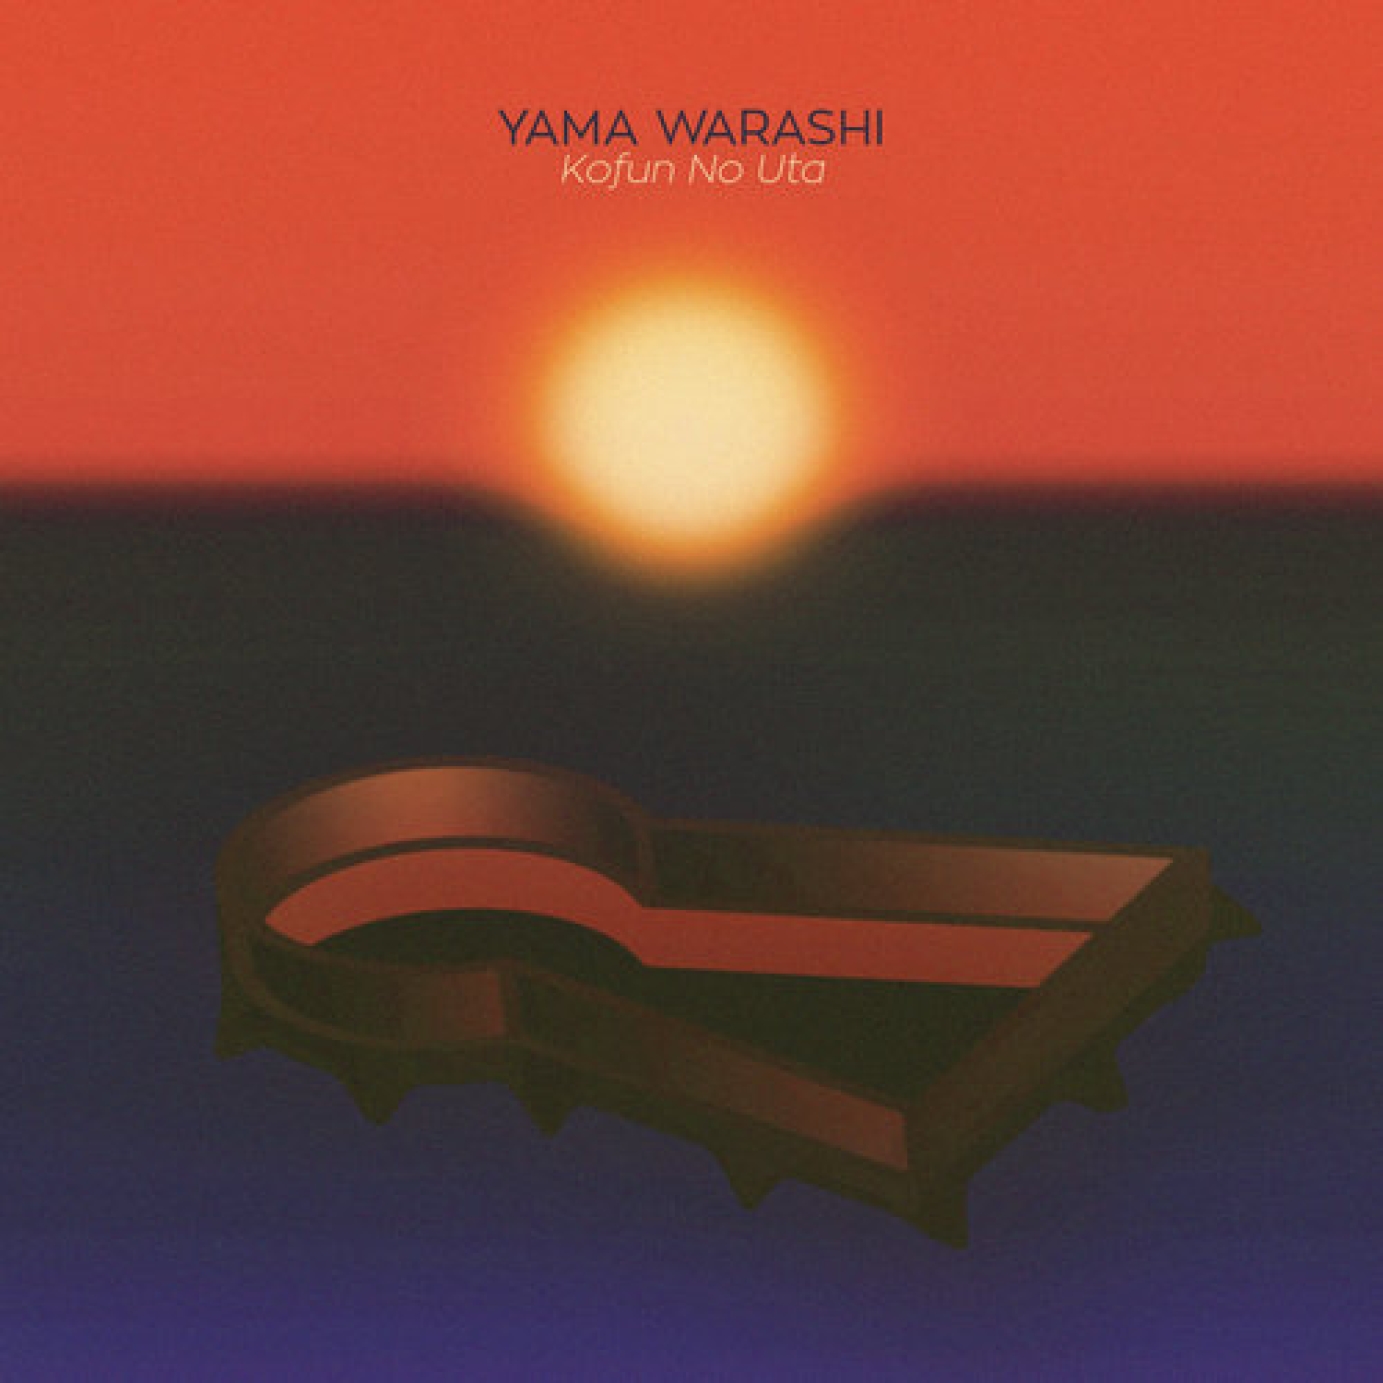 Creative direction for Yama Warashi by Jack Hardwicke